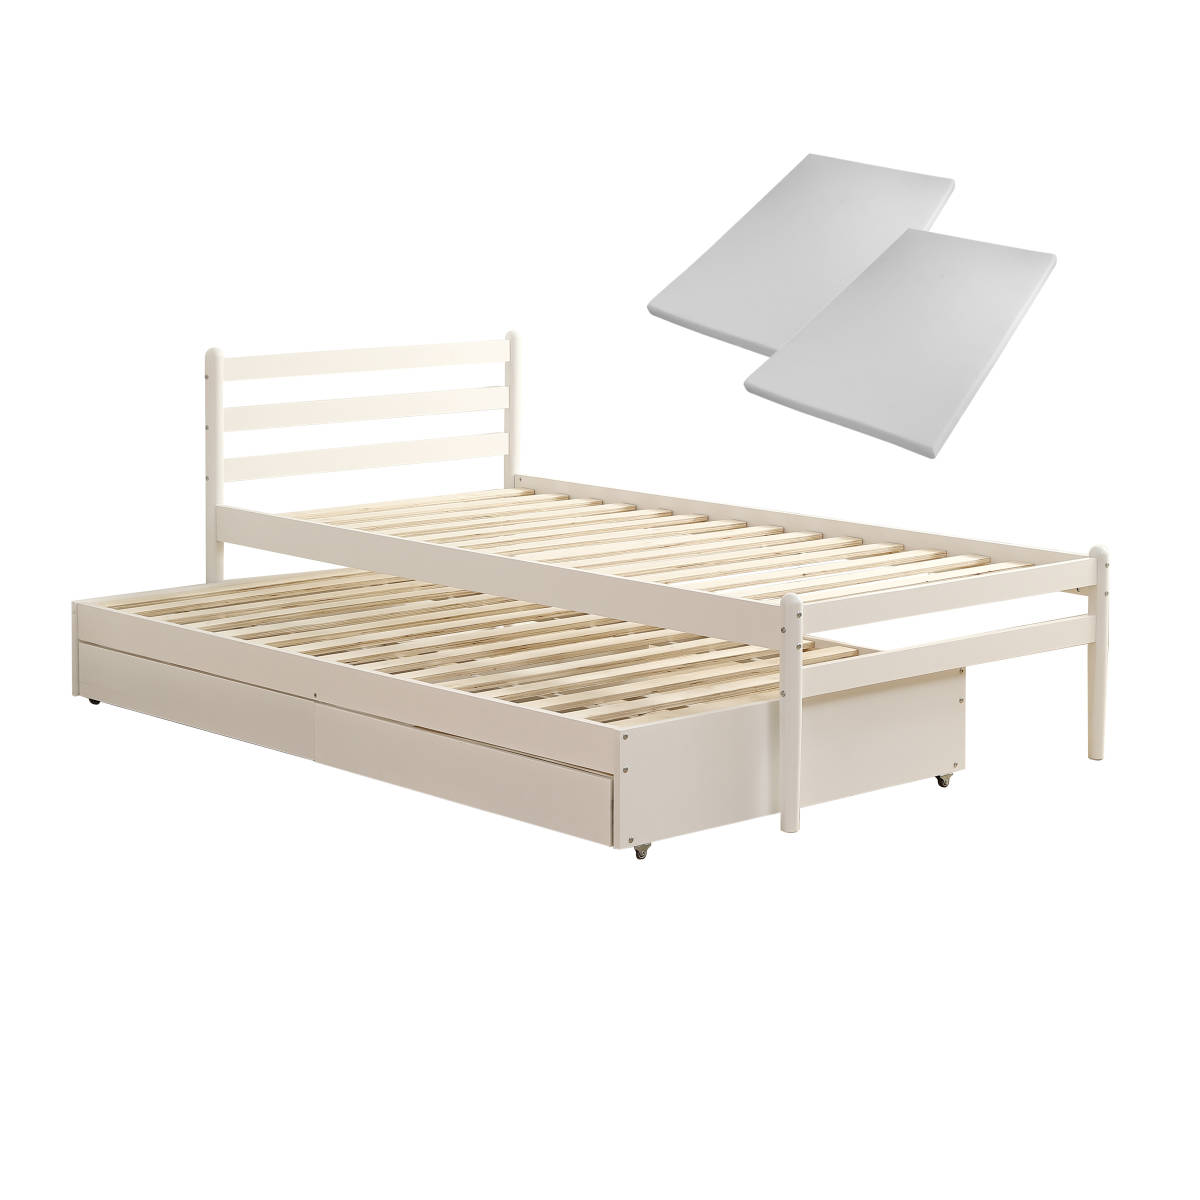 【2つマットレス付き】親子ベッド シングルベッド 引き出し付き 木製 ベッドフレーム すのこ 親子ベッド 省スペース シングル